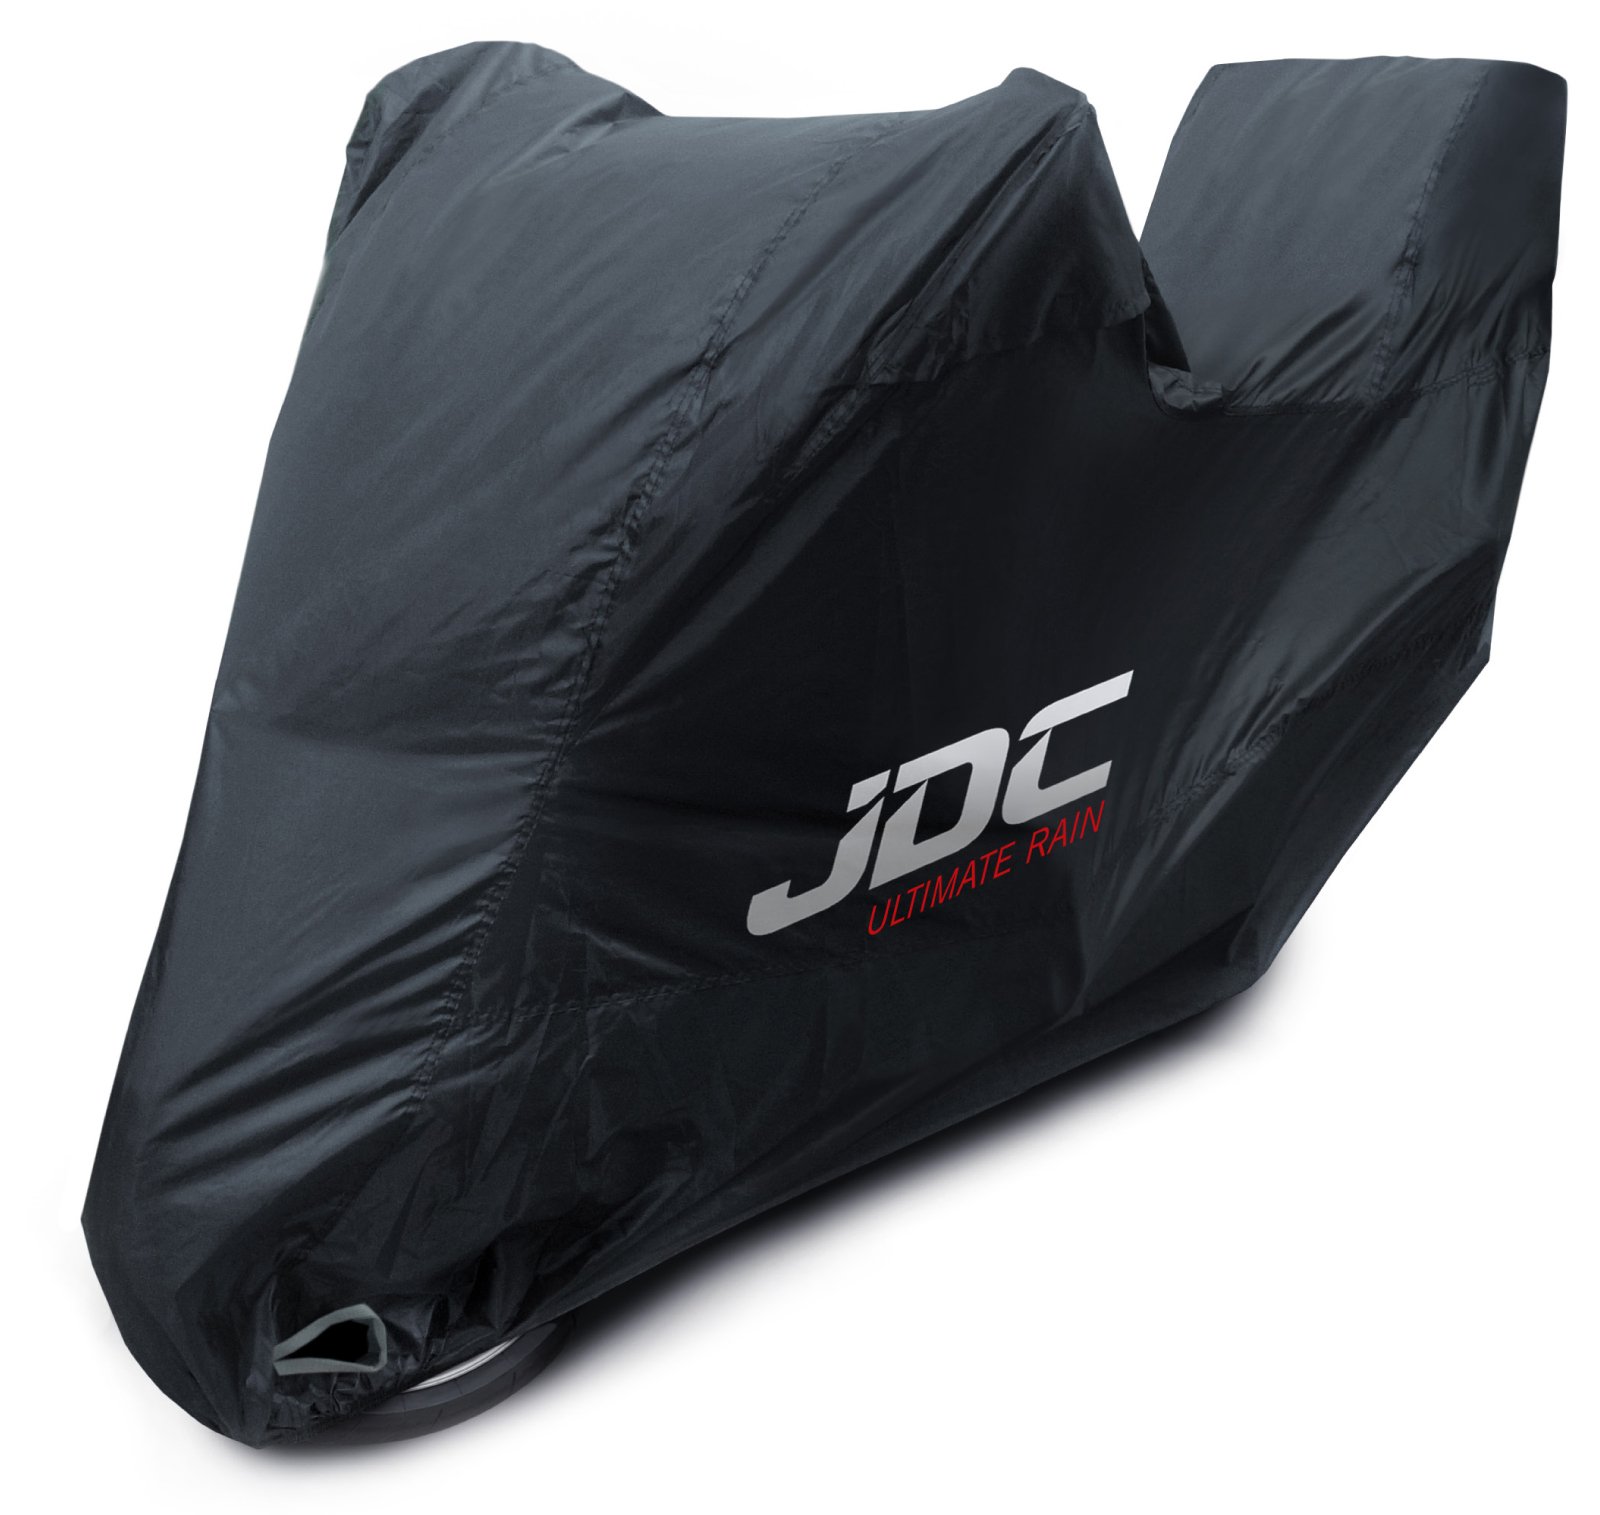 JDC 100% wasserdichte Motorradabdeckung – Ultimate RAIN (Strapazierfähig, weiches Futter, hitzebeständig, verschweißte Nähte) - XL Tall Top-Box von JDC